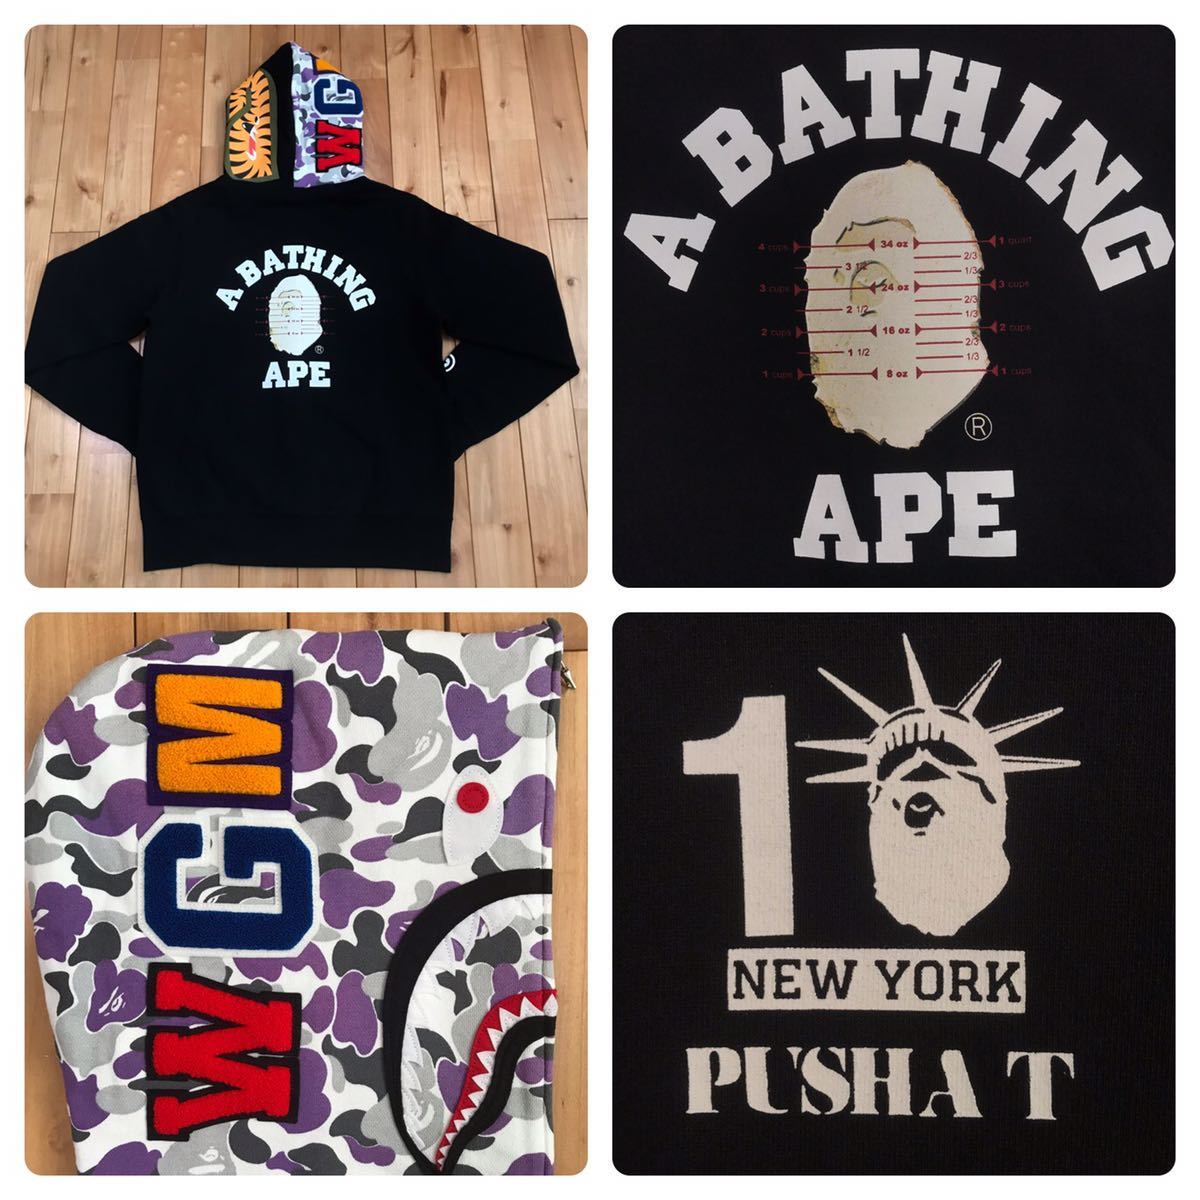 NY10周年記念 PUSHA T シャーク パーカー shark full zip 高品質の激安 hoodie New york bape bathing ディズニープリンセスのベビーグッズも大集合 ape エイプ 10th a ニューヨーク ベイプ NYC camo